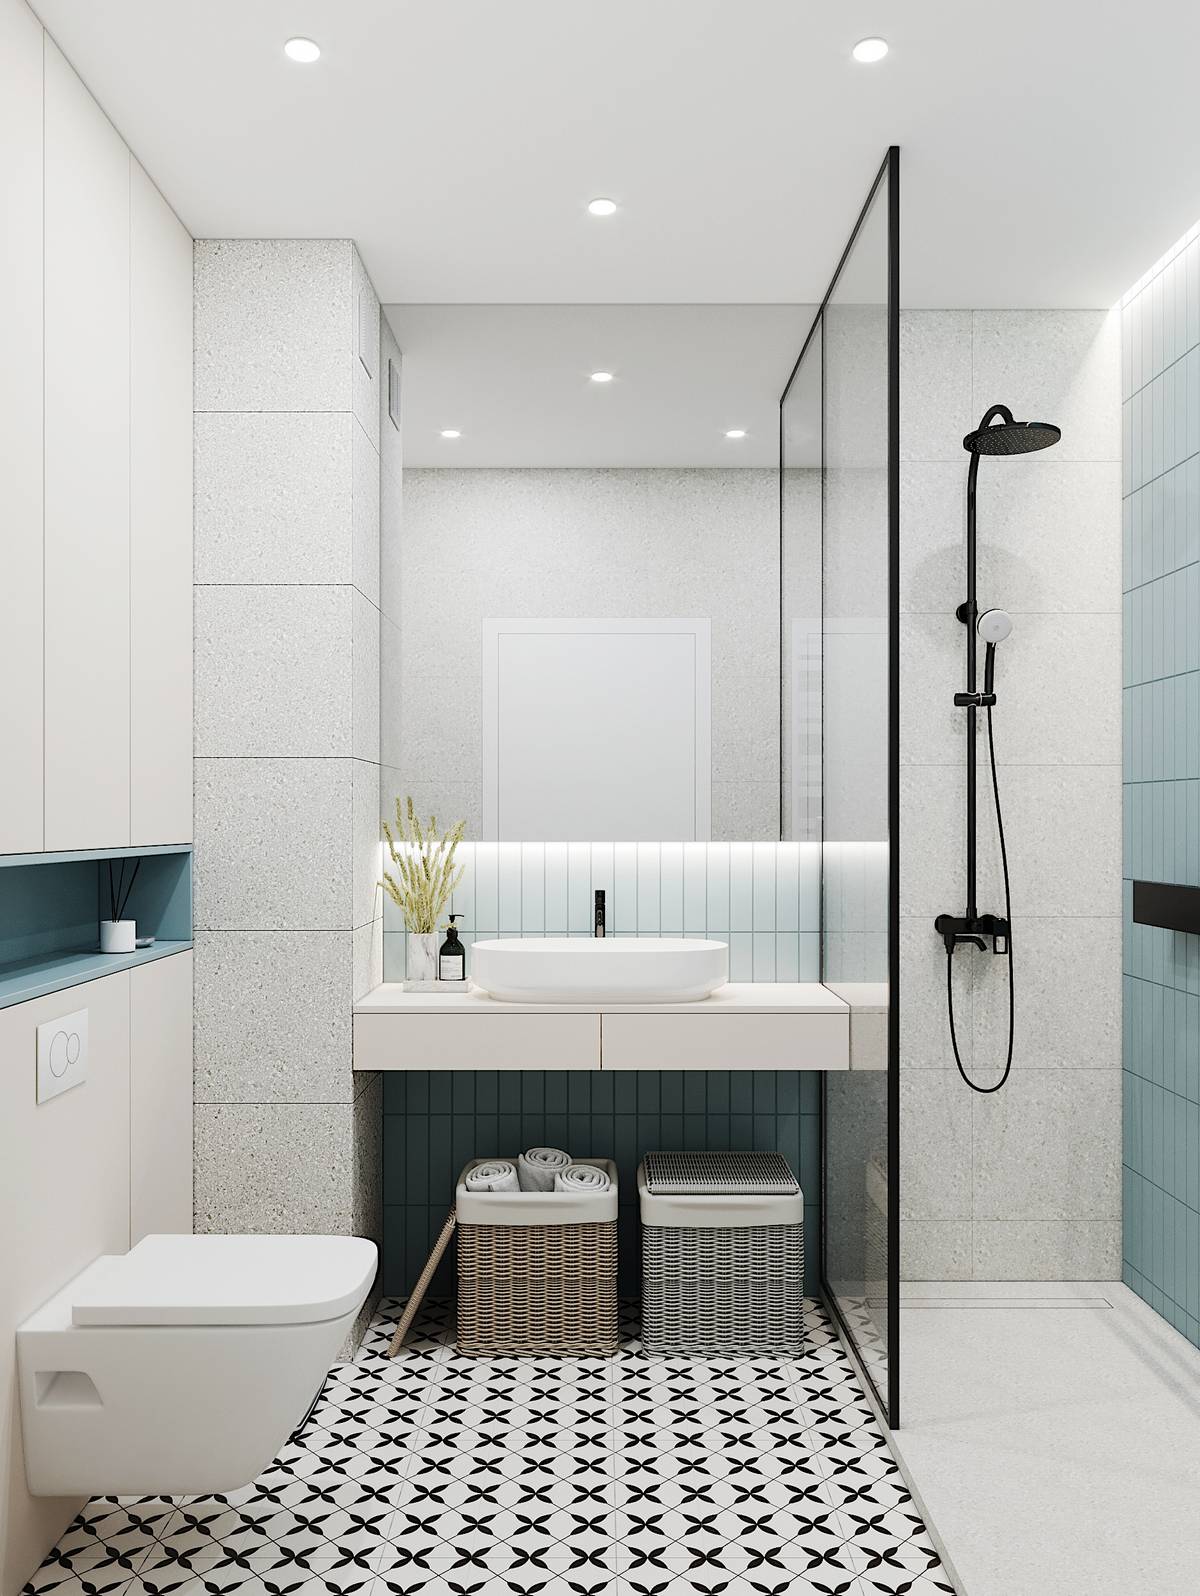 Bức tường buồng tắm đứng được ốp gạch mà xanh lam tạo điểm nhấn cho căn phòng ngập tràn sắc trắng, phân vùng với toilet bằng cửa kính trong suốt.